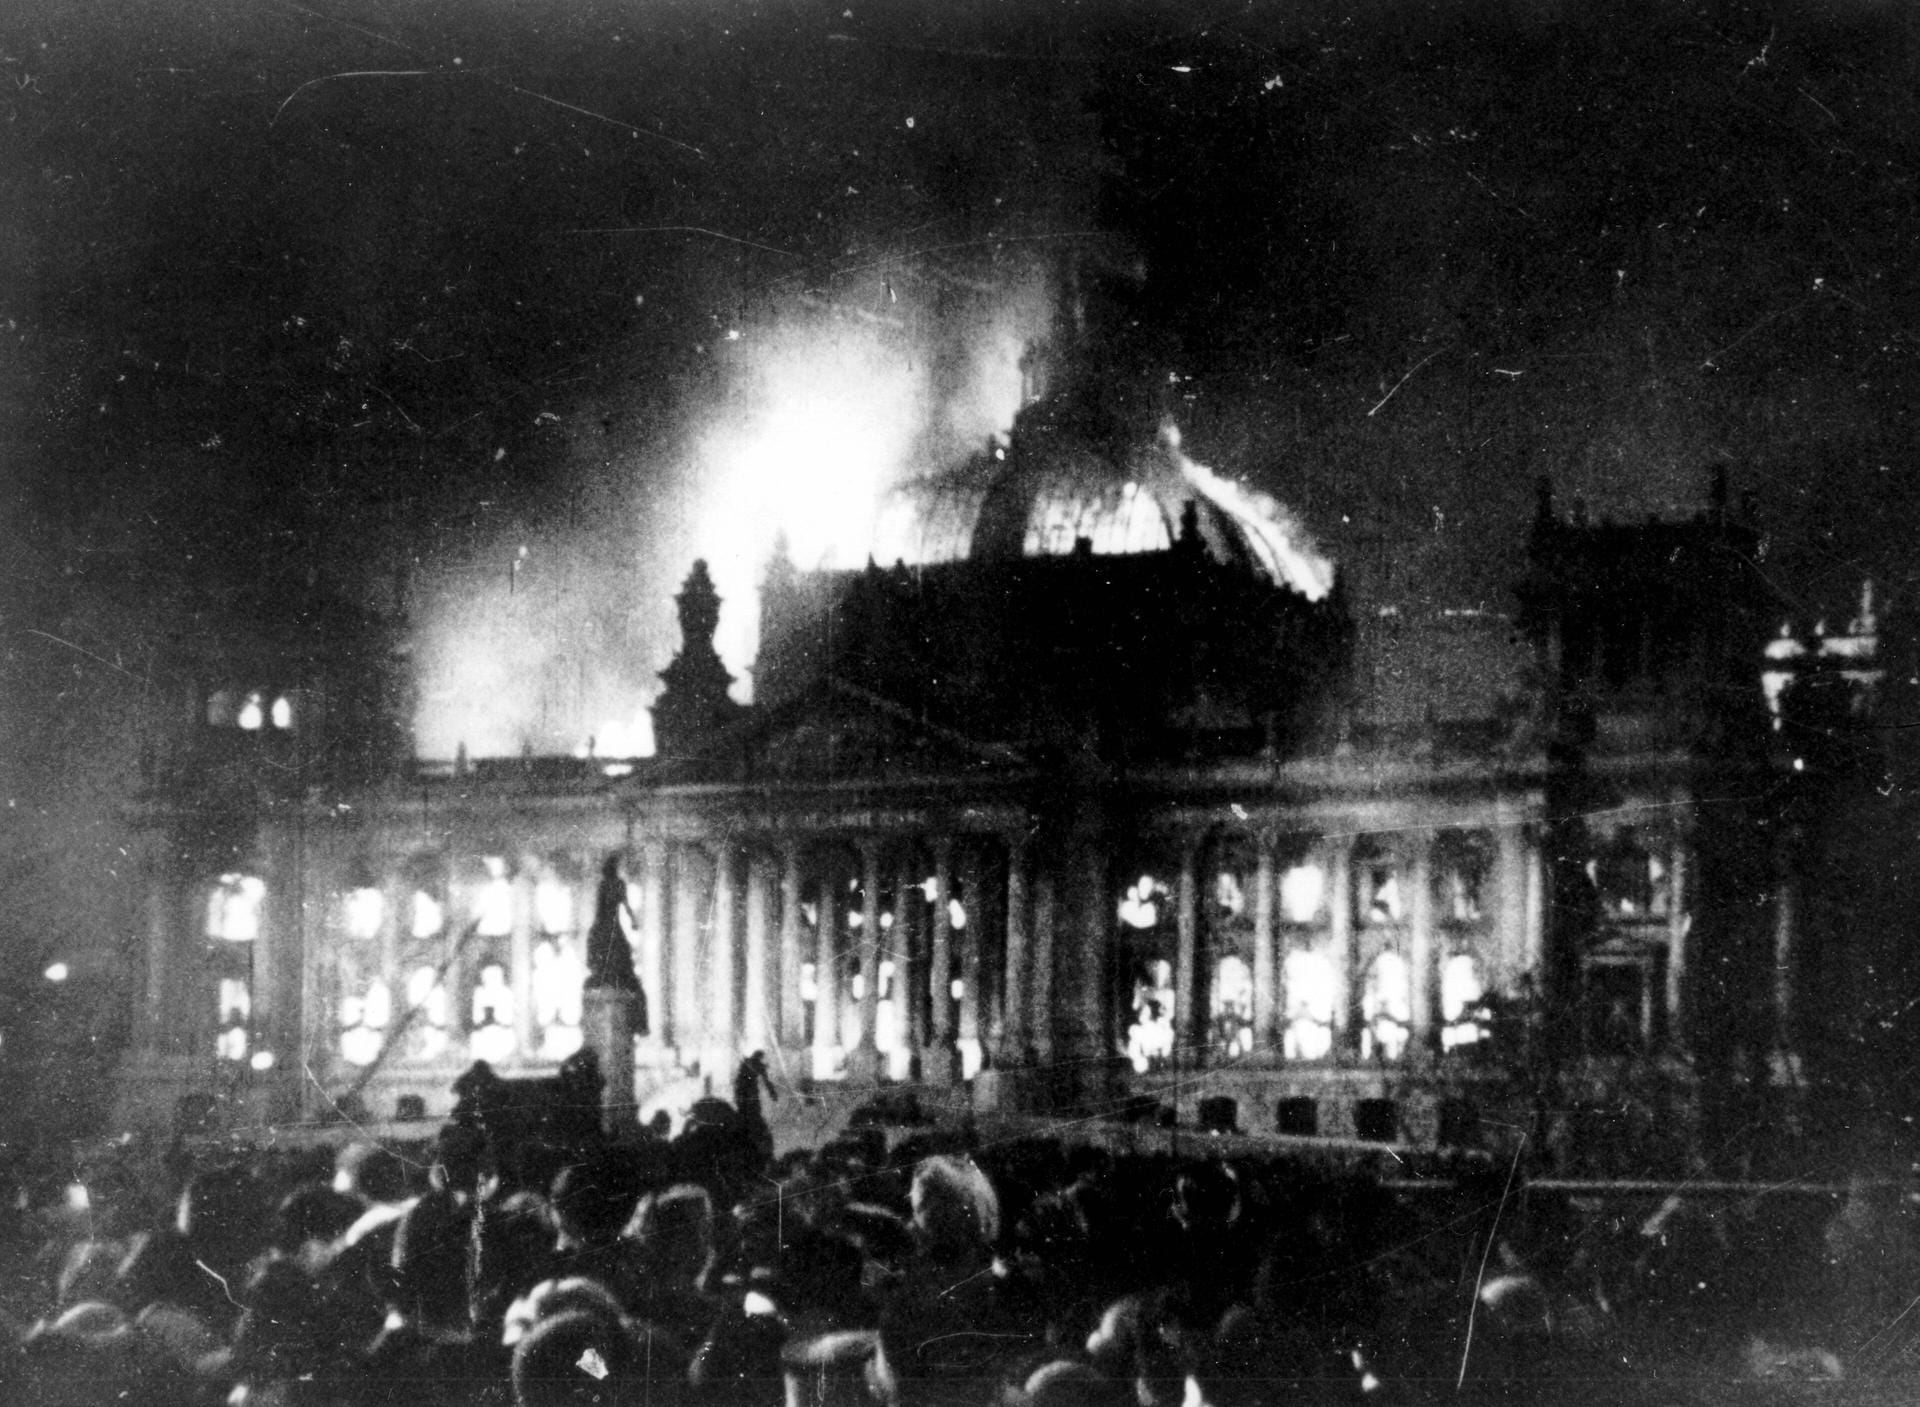 Der Reichstagsbrand 1933 war ein wichtiges Ereignis auf dem Weg zur Diktatur des Nationalsozialismus: In der Folge des Brandes, den die NSDAP politisch ausschlachtete, setzte der Reichspräsident Hindenburg kurz vor der Wahl die Grundrechte außer Kraft. Die Hintergründe des Brandes sind immer noch nicht geklärt.